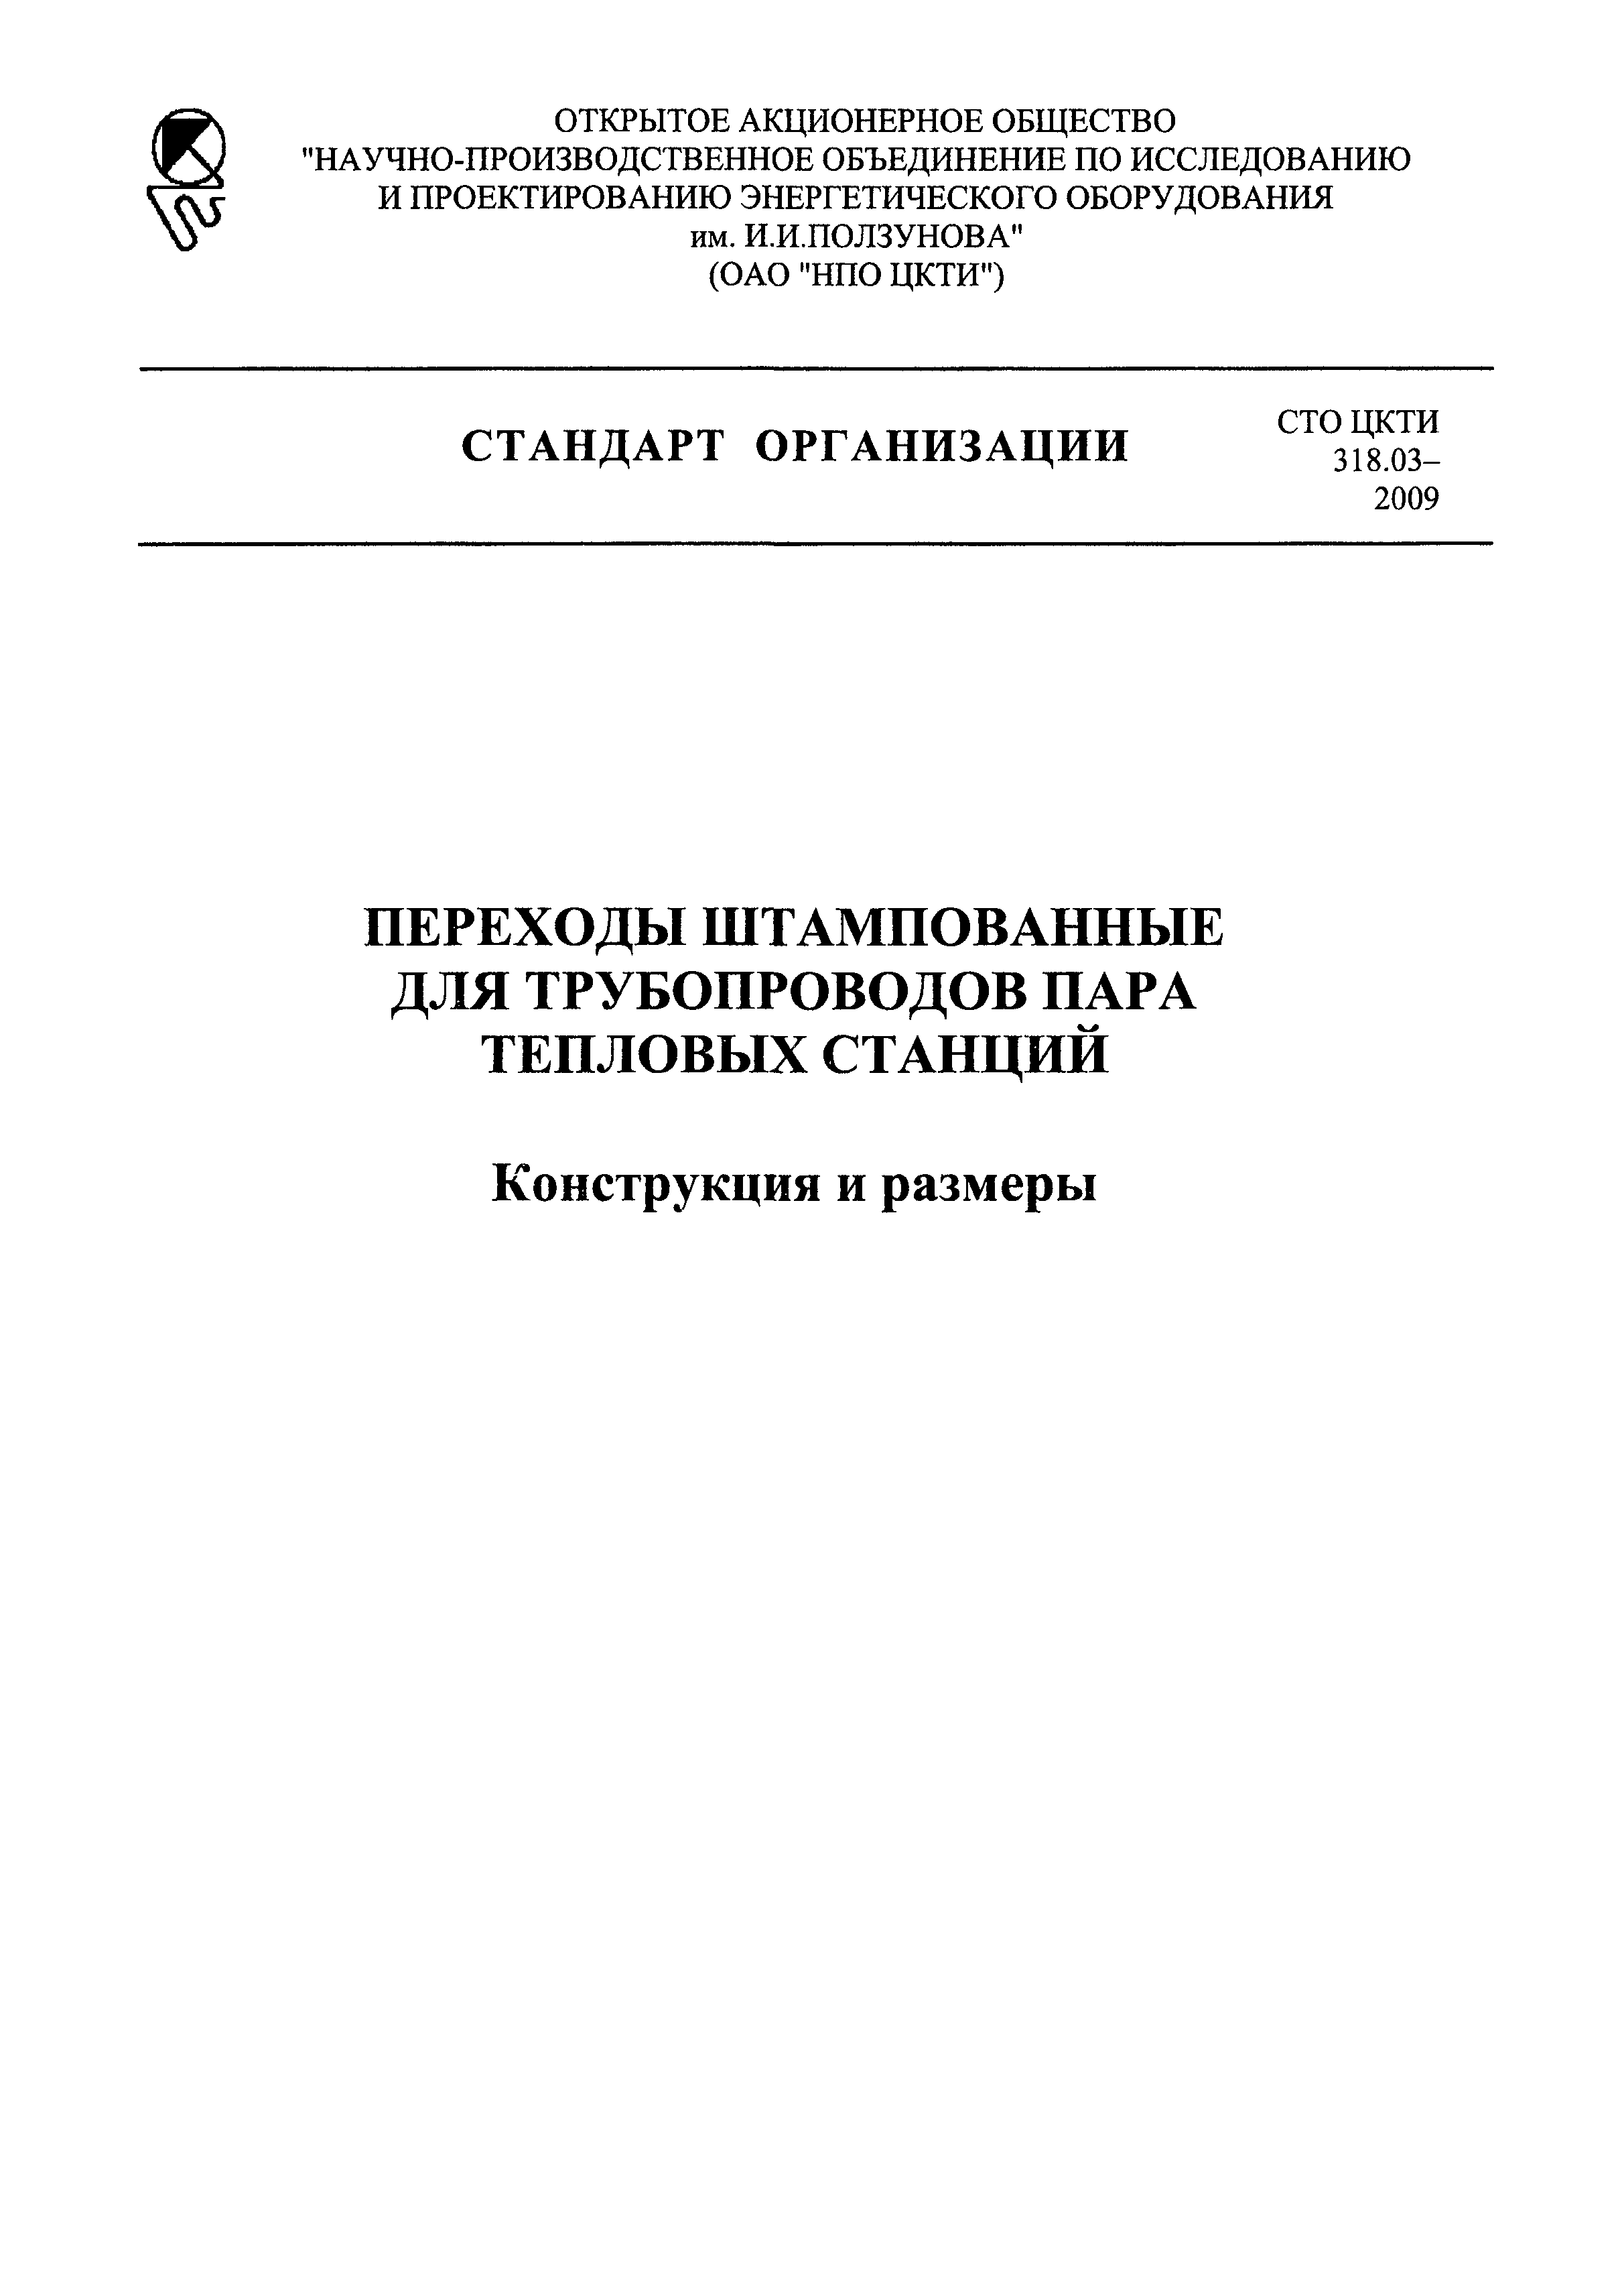 СТО ЦКТИ 318.03-2009